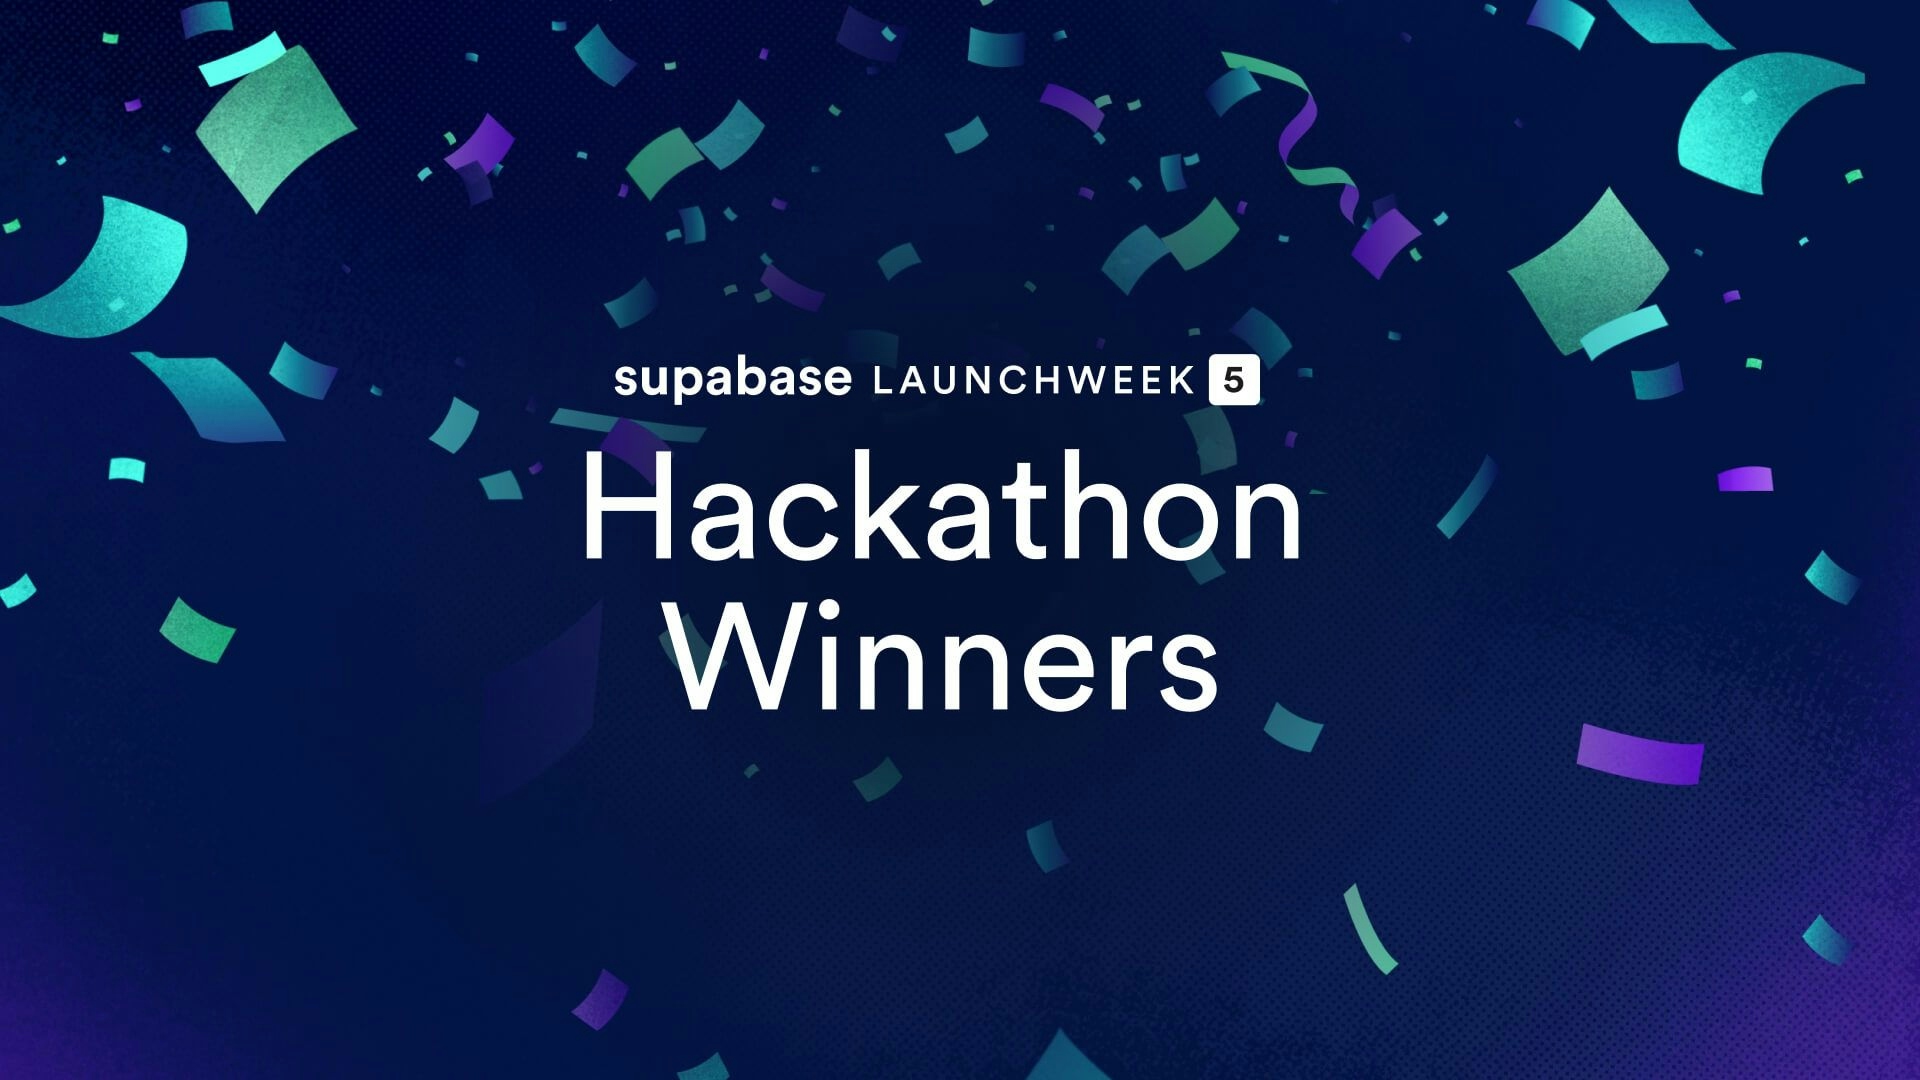 Launch Week 5 Hackathon Winners